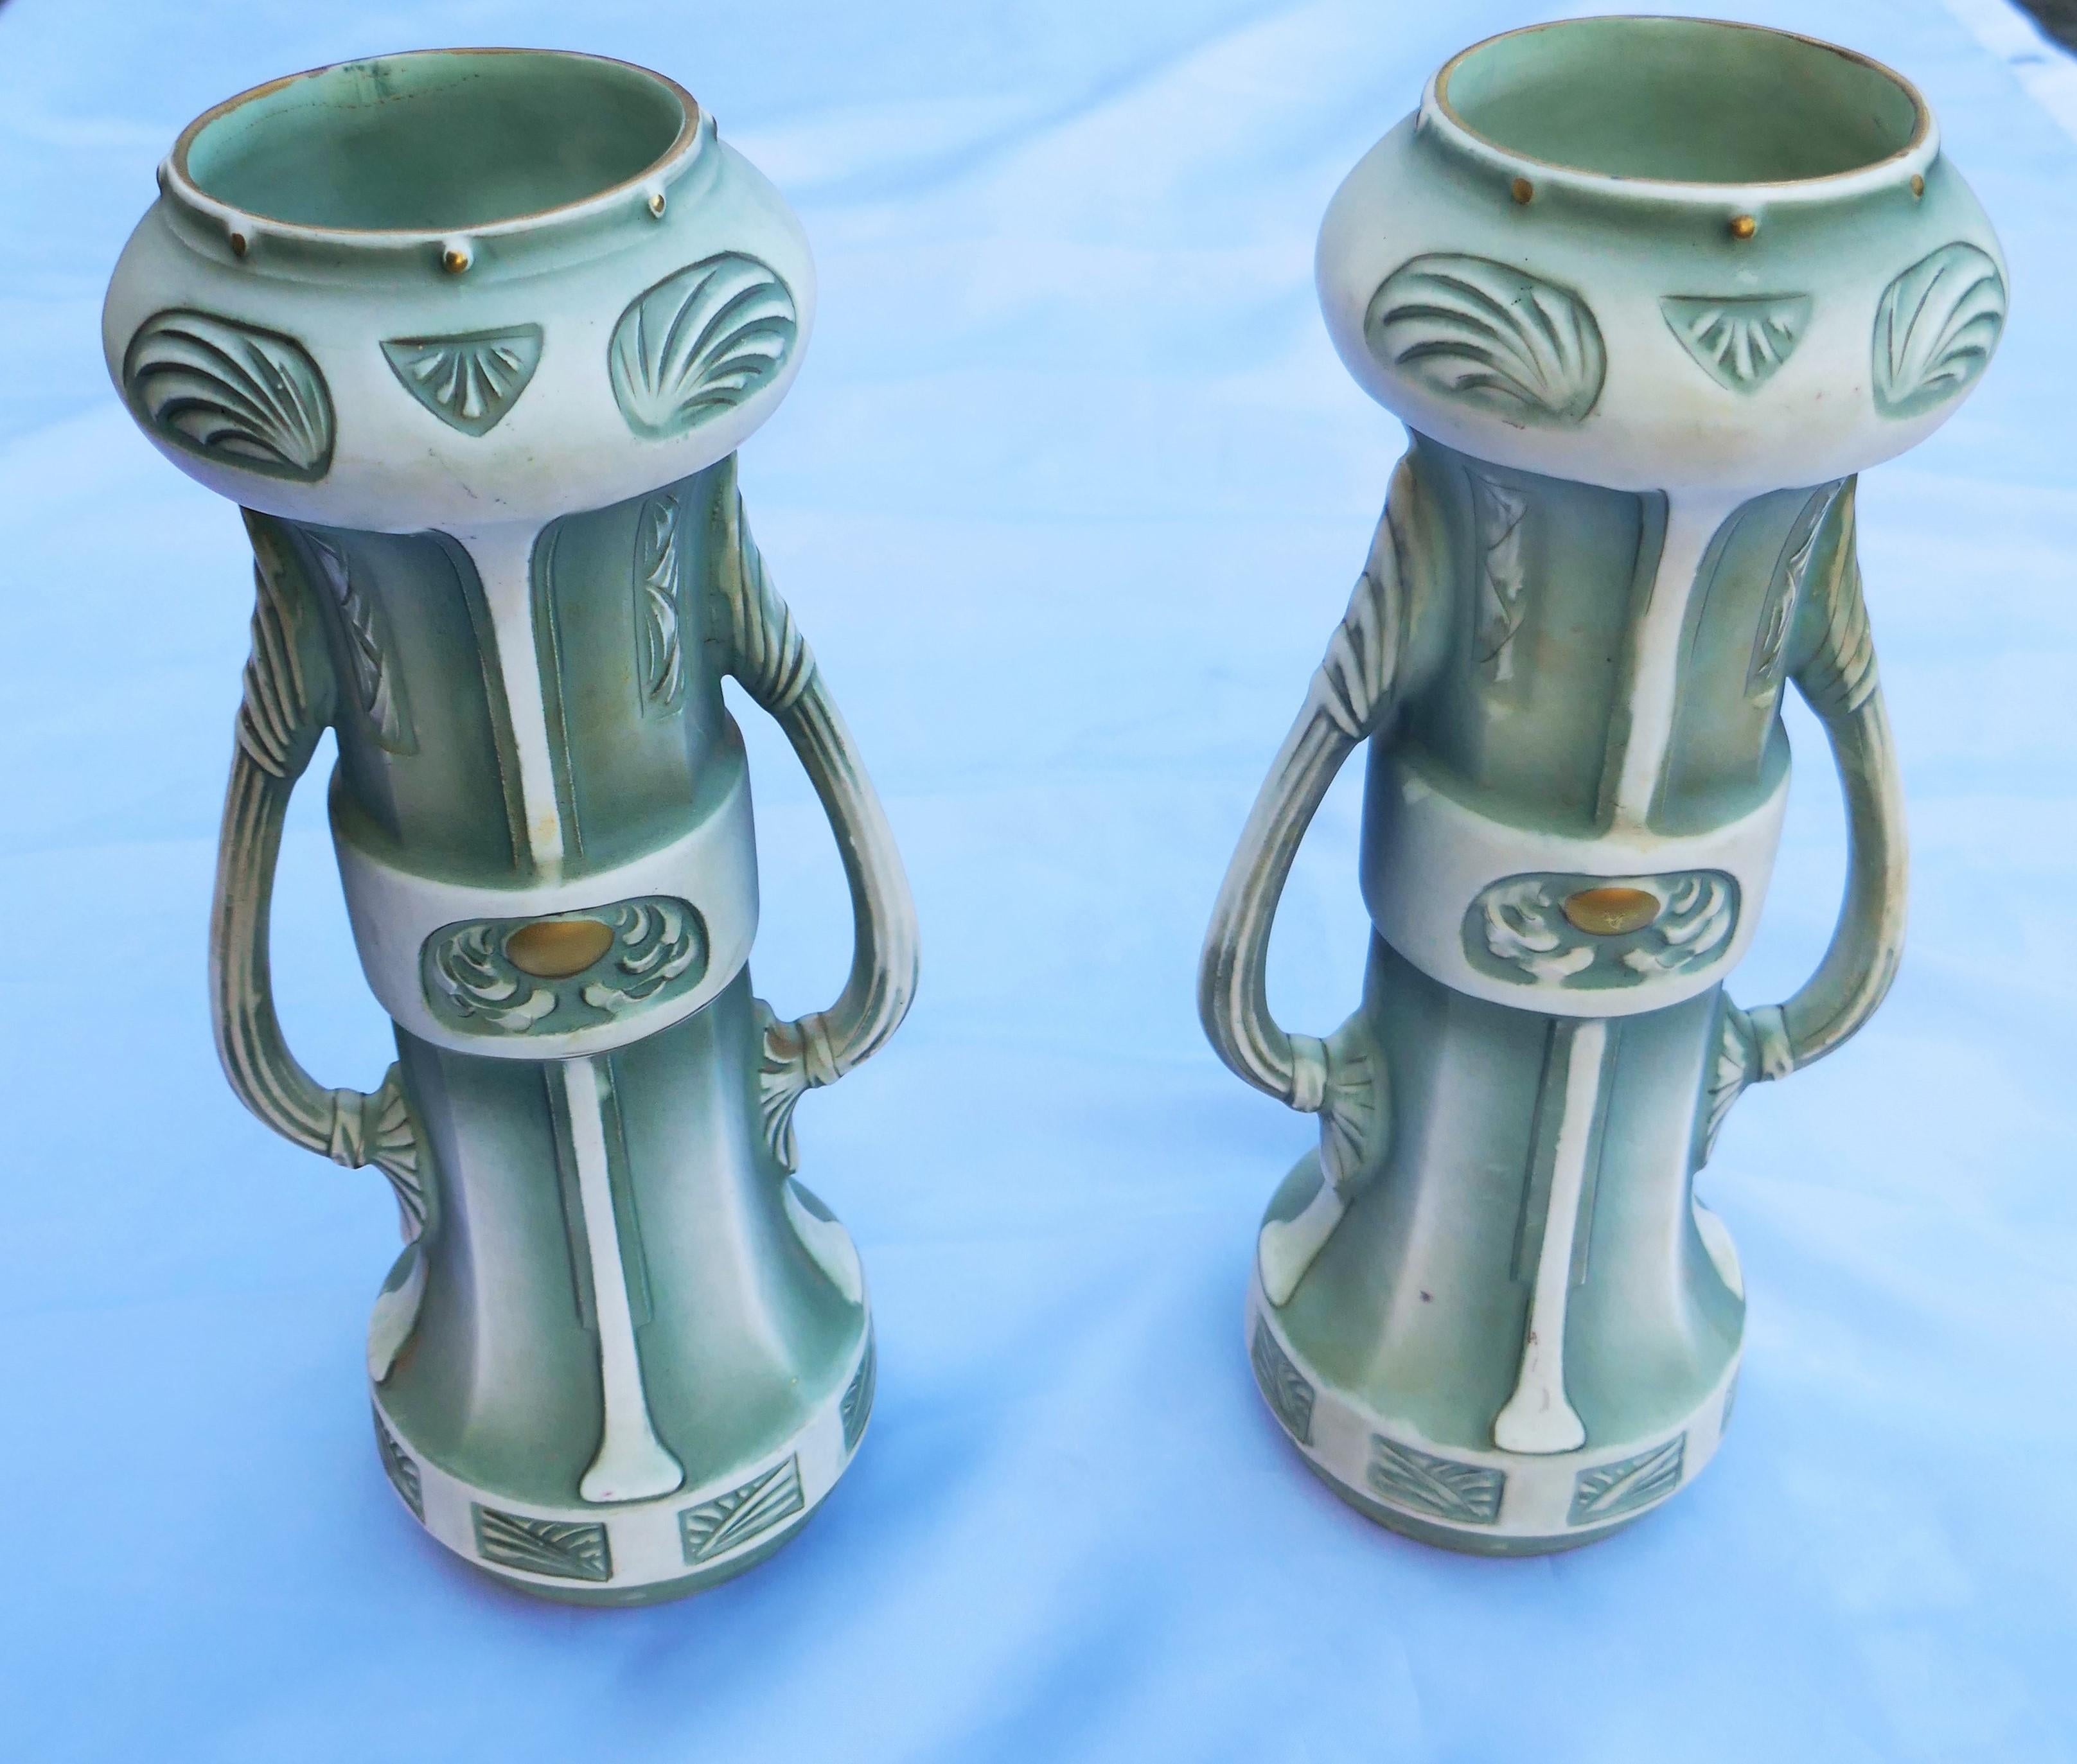 Paar Vasen, die Robert Hanke für Royal Wettina Austria zugeschrieben werden.
Guter Zustand.
Ich danke Ihnen.